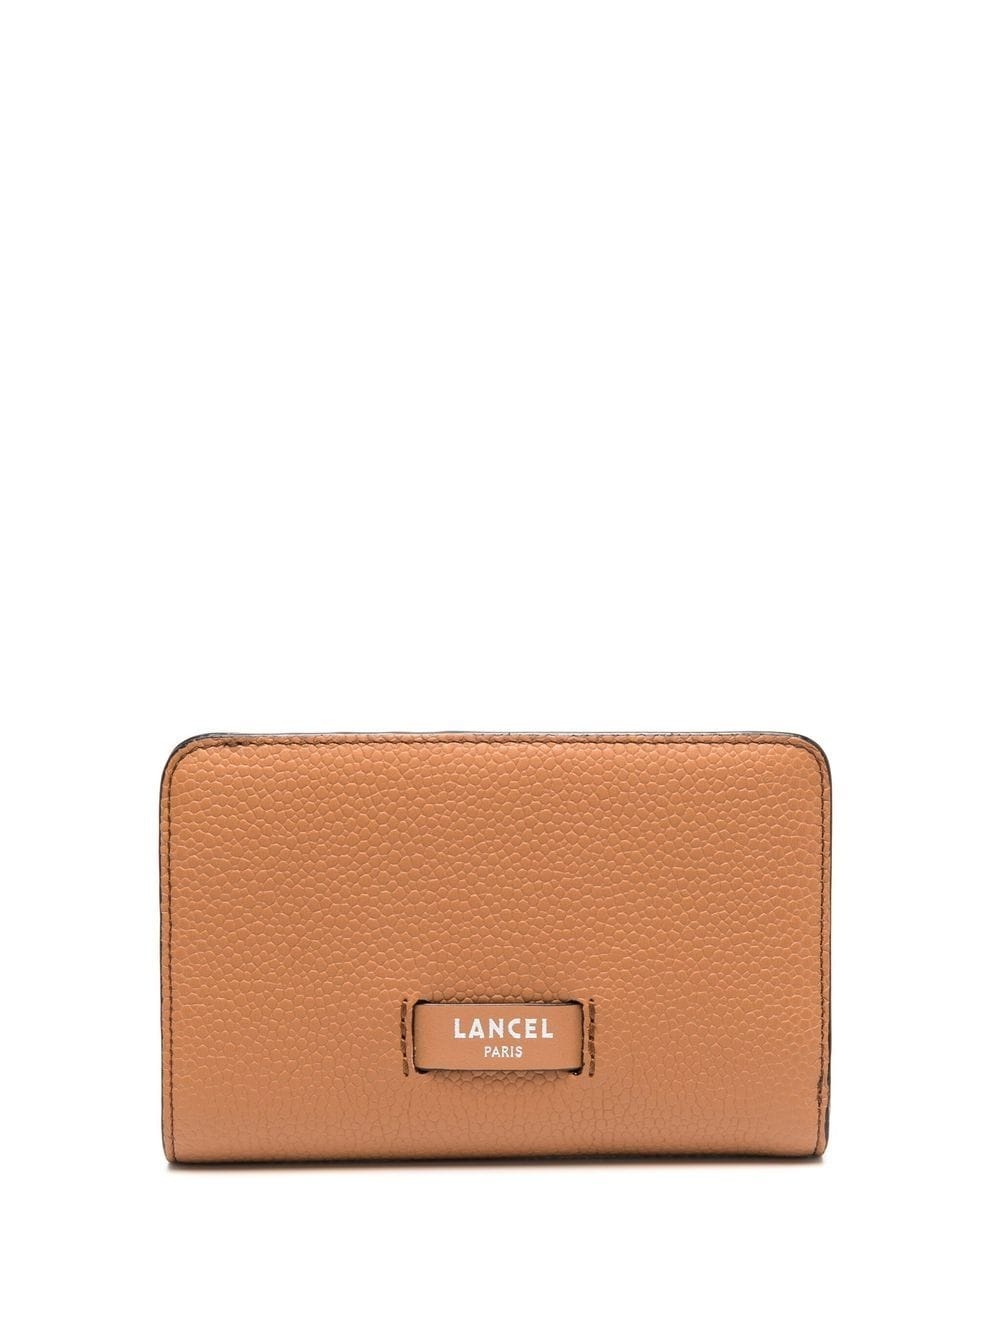 zip compact wallet - 1